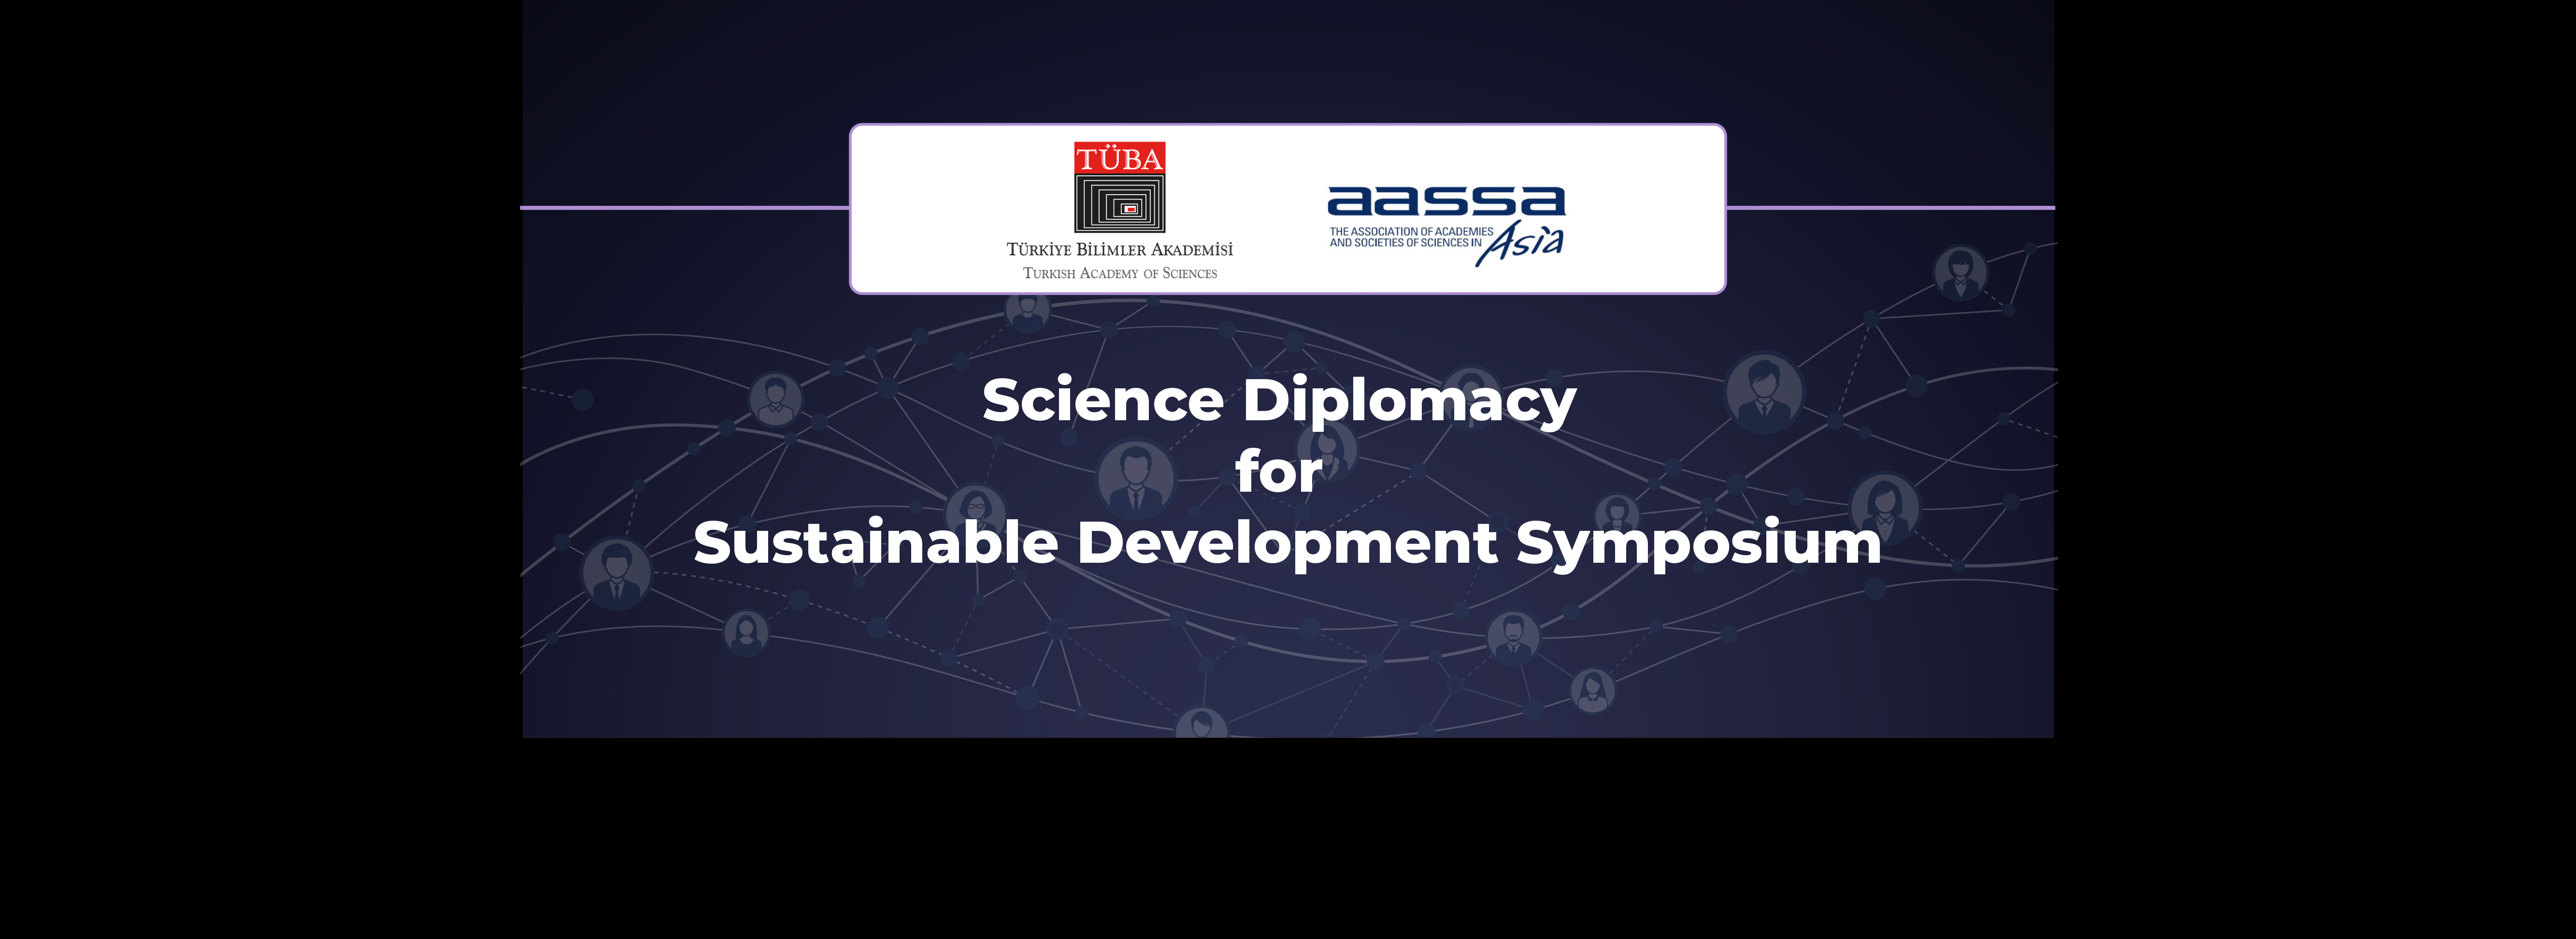 TÜBA, Sürdürülebilir Kalkınma için Bilim Diplomasisi Sempozyumu Yapacak